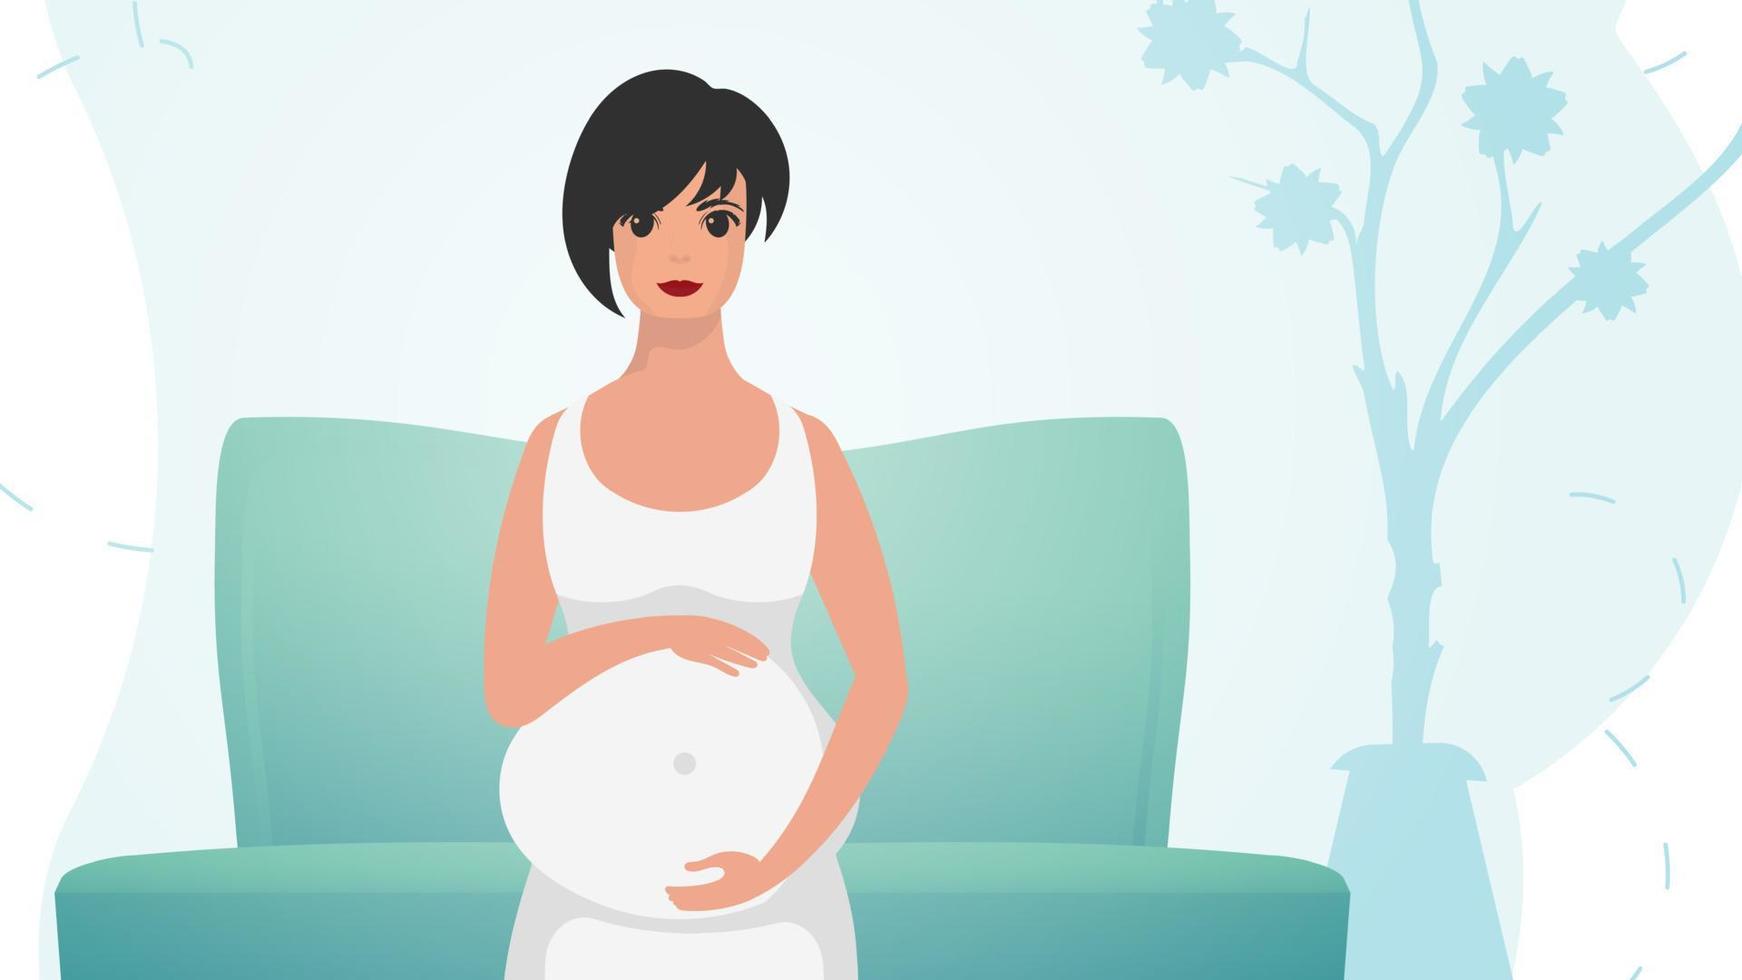 zwanger meisje Holding haar maag. zwangerschap en moederschap. vector illustratie.